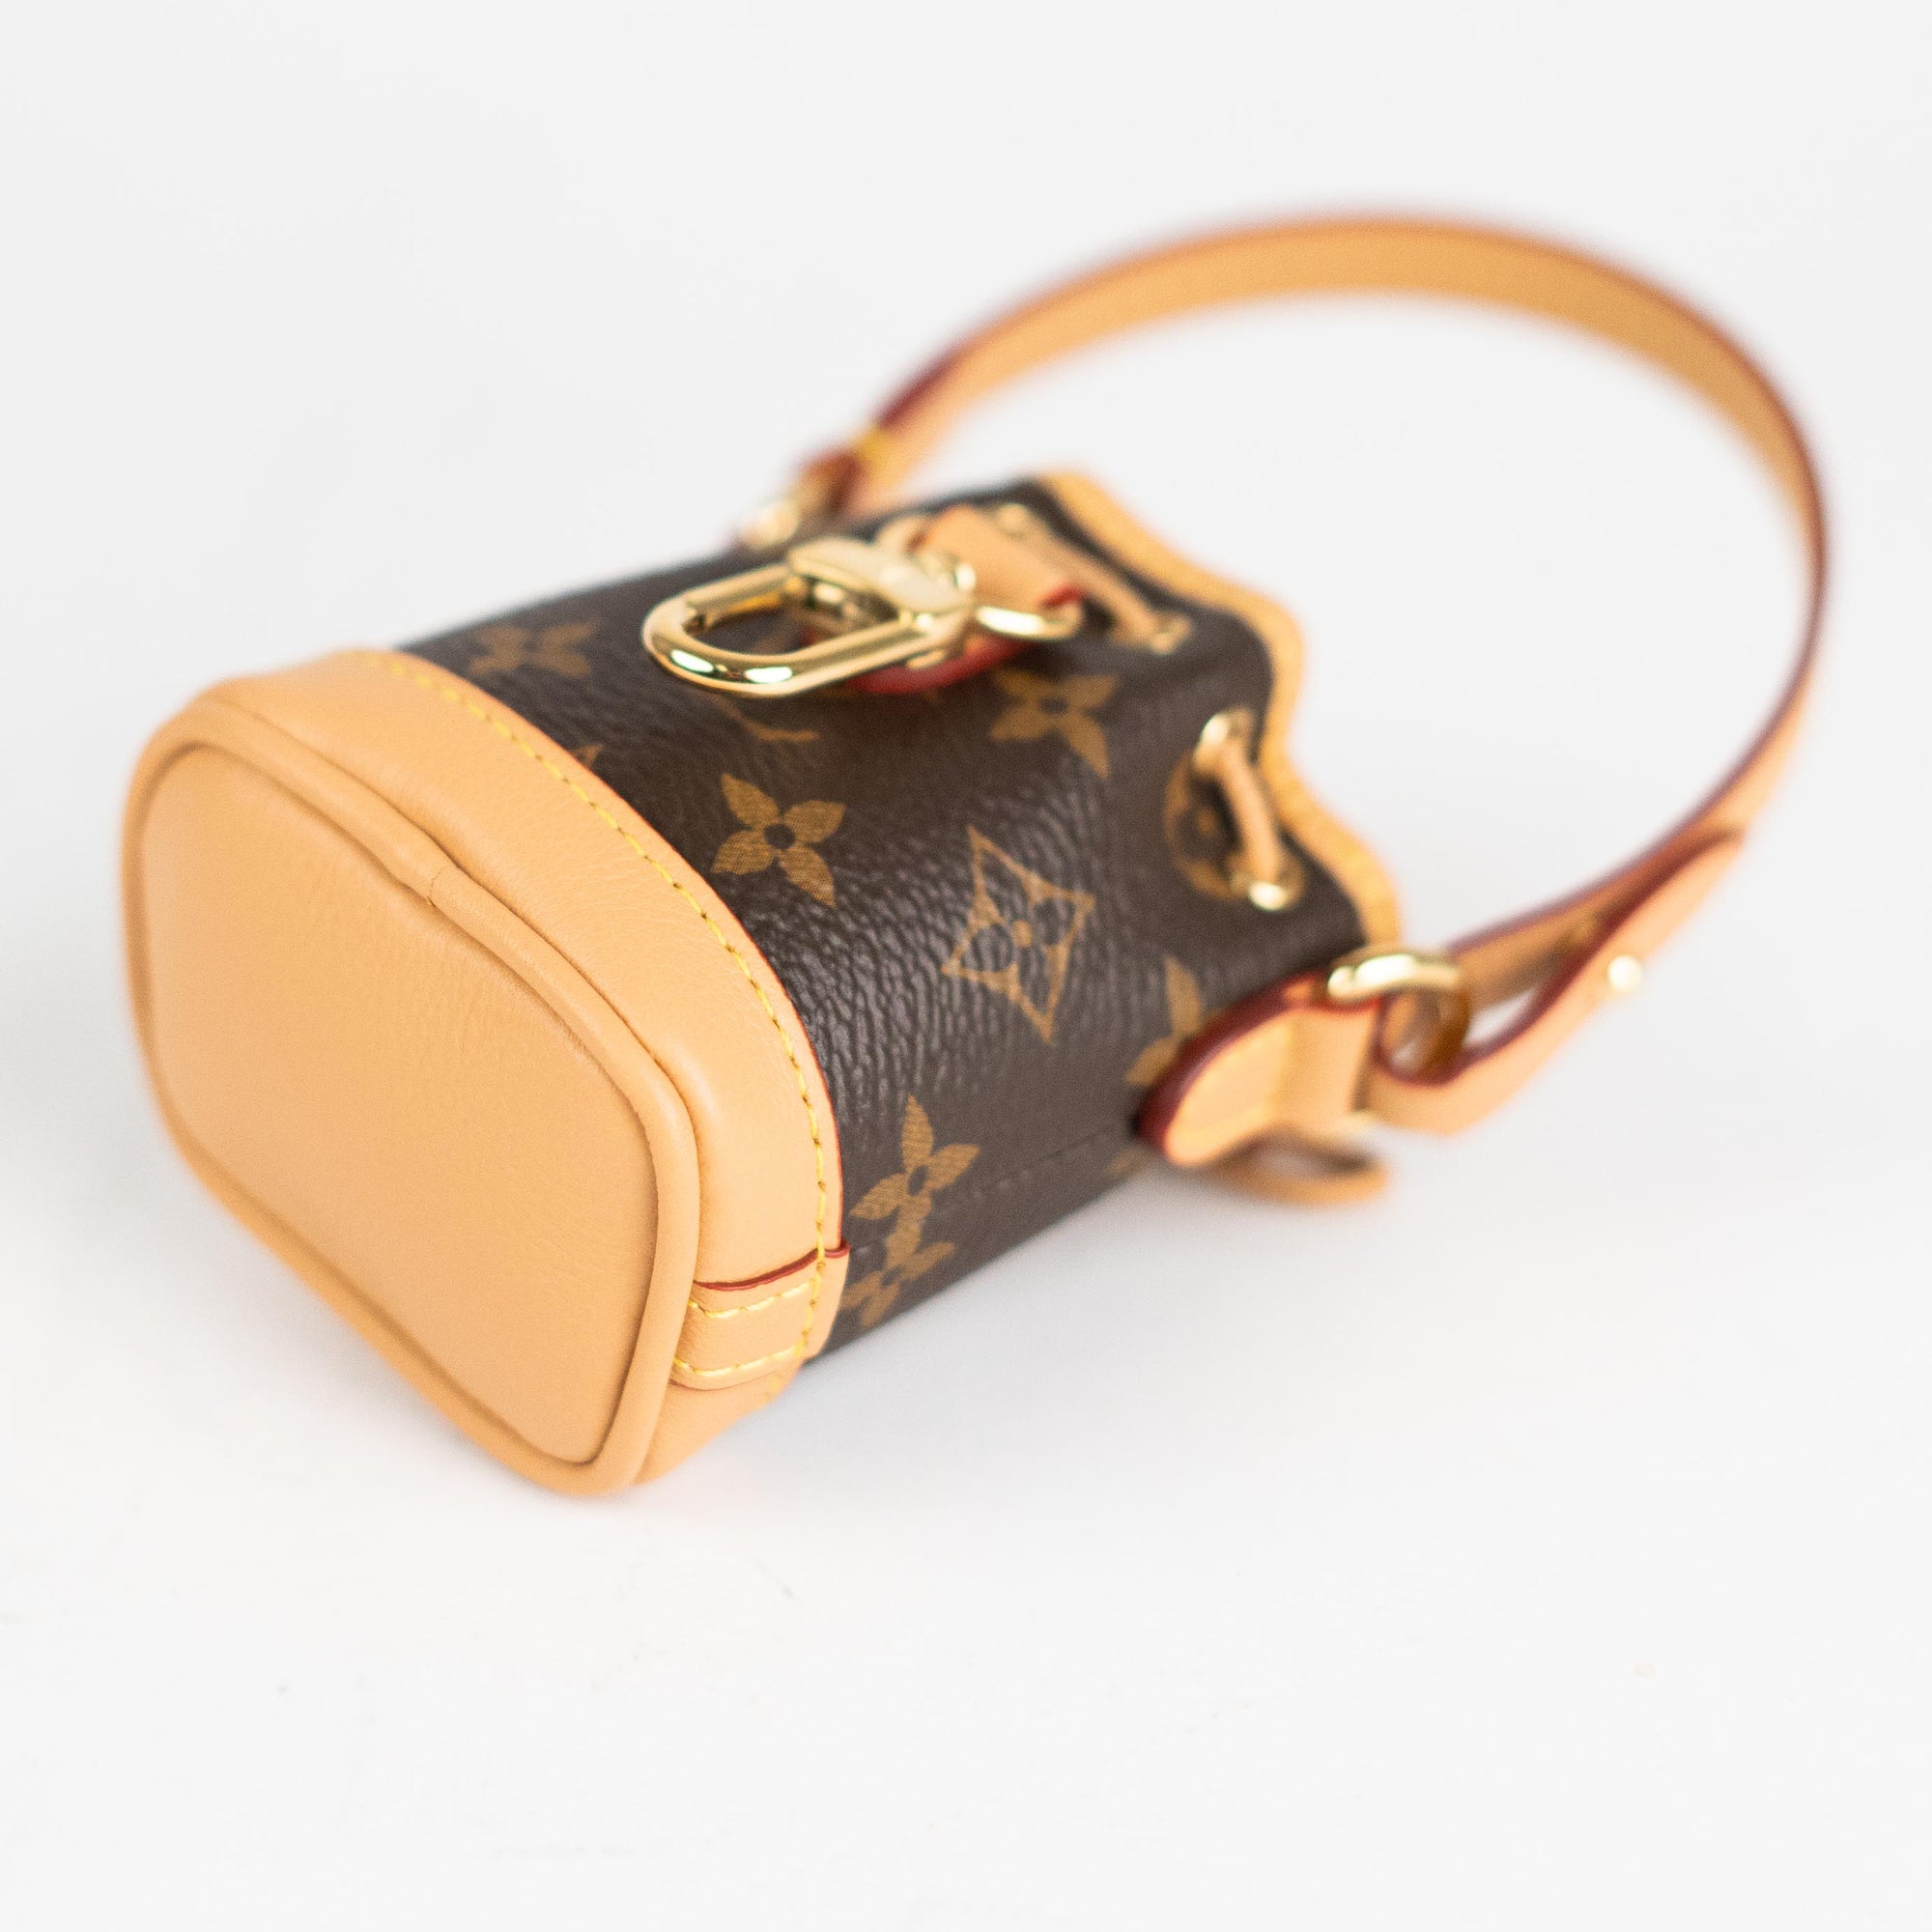 Louis Vuitton Micro Noe Bag Charm Monogram - THE PURSE AFFAIR